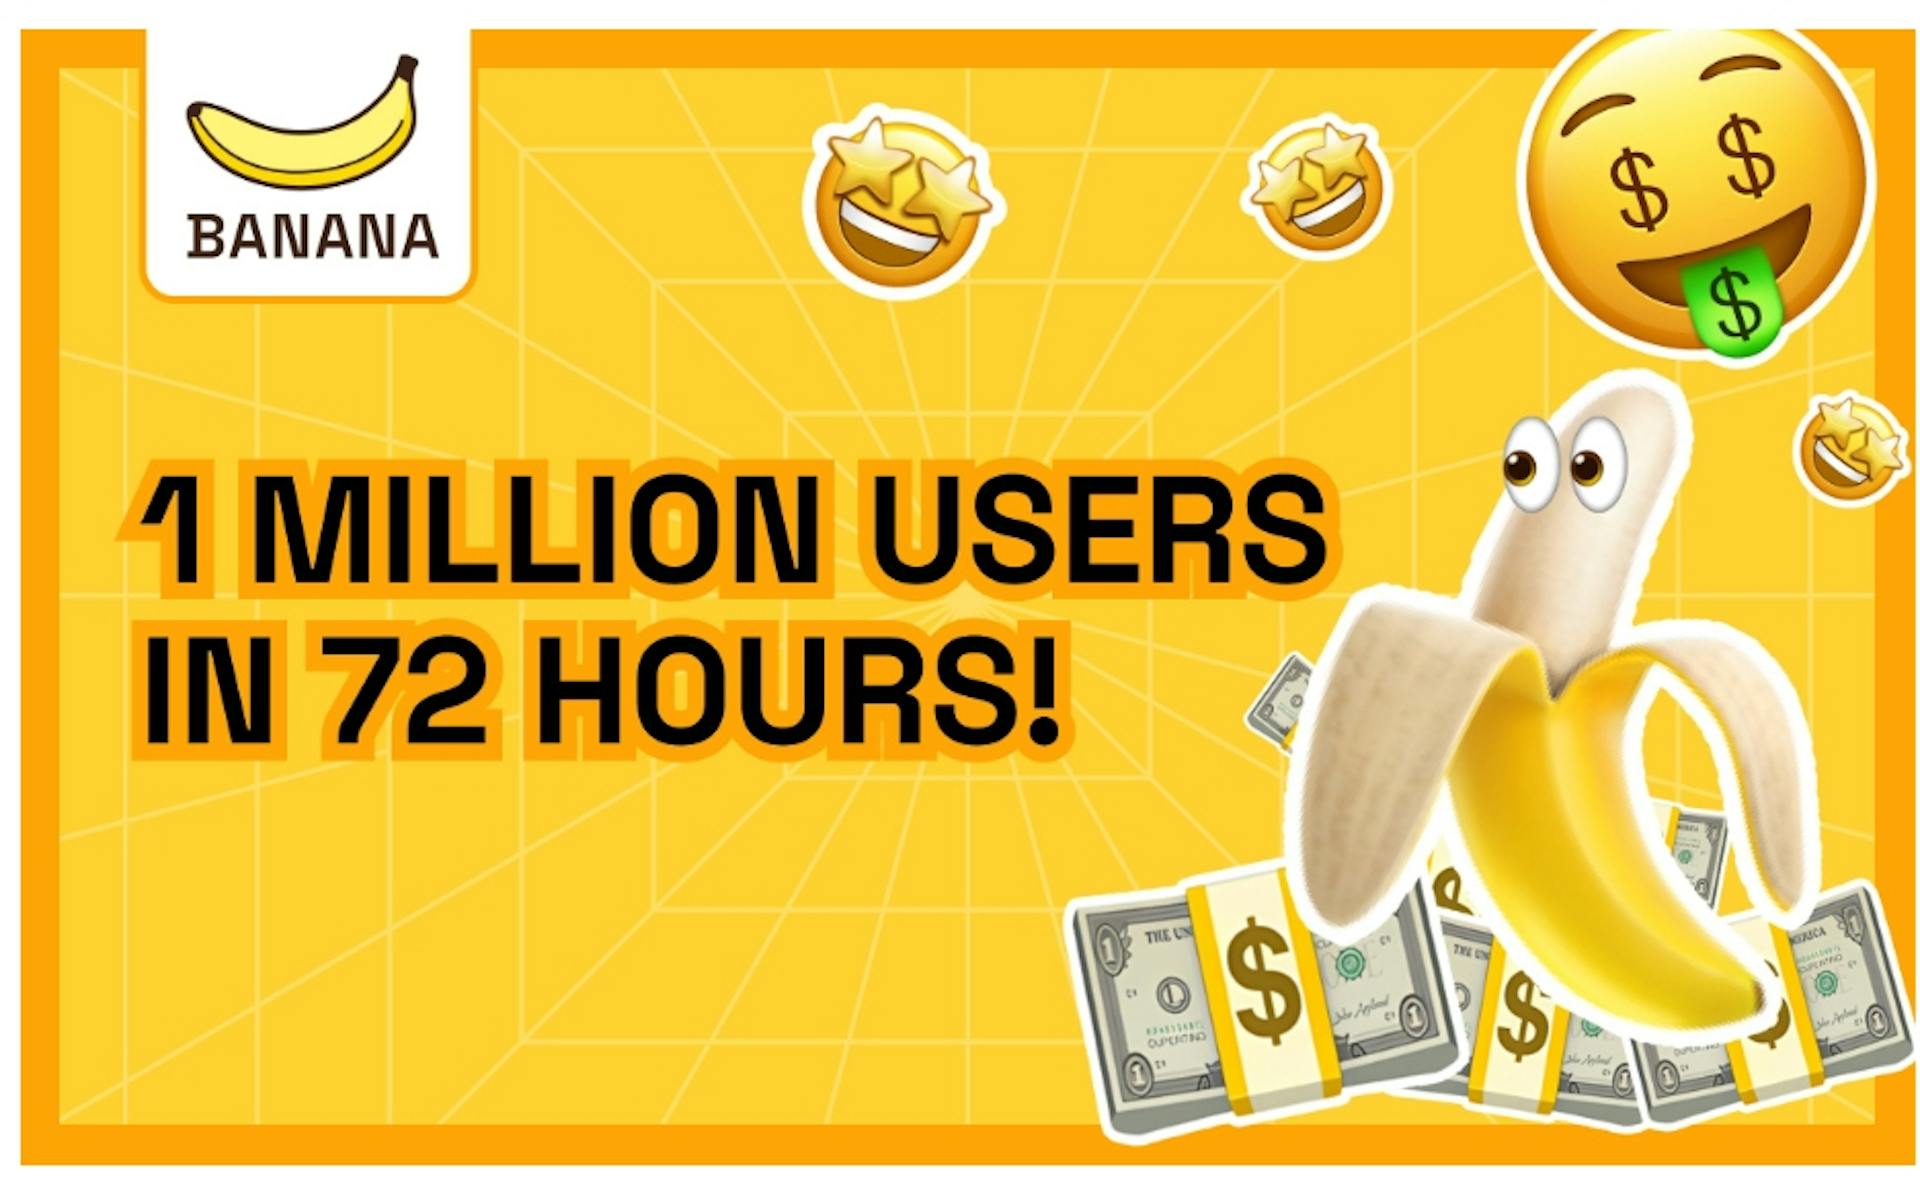 featured image - Le jeu TON « BANANA » atteint 1 million d’utilisateurs en 72 heures